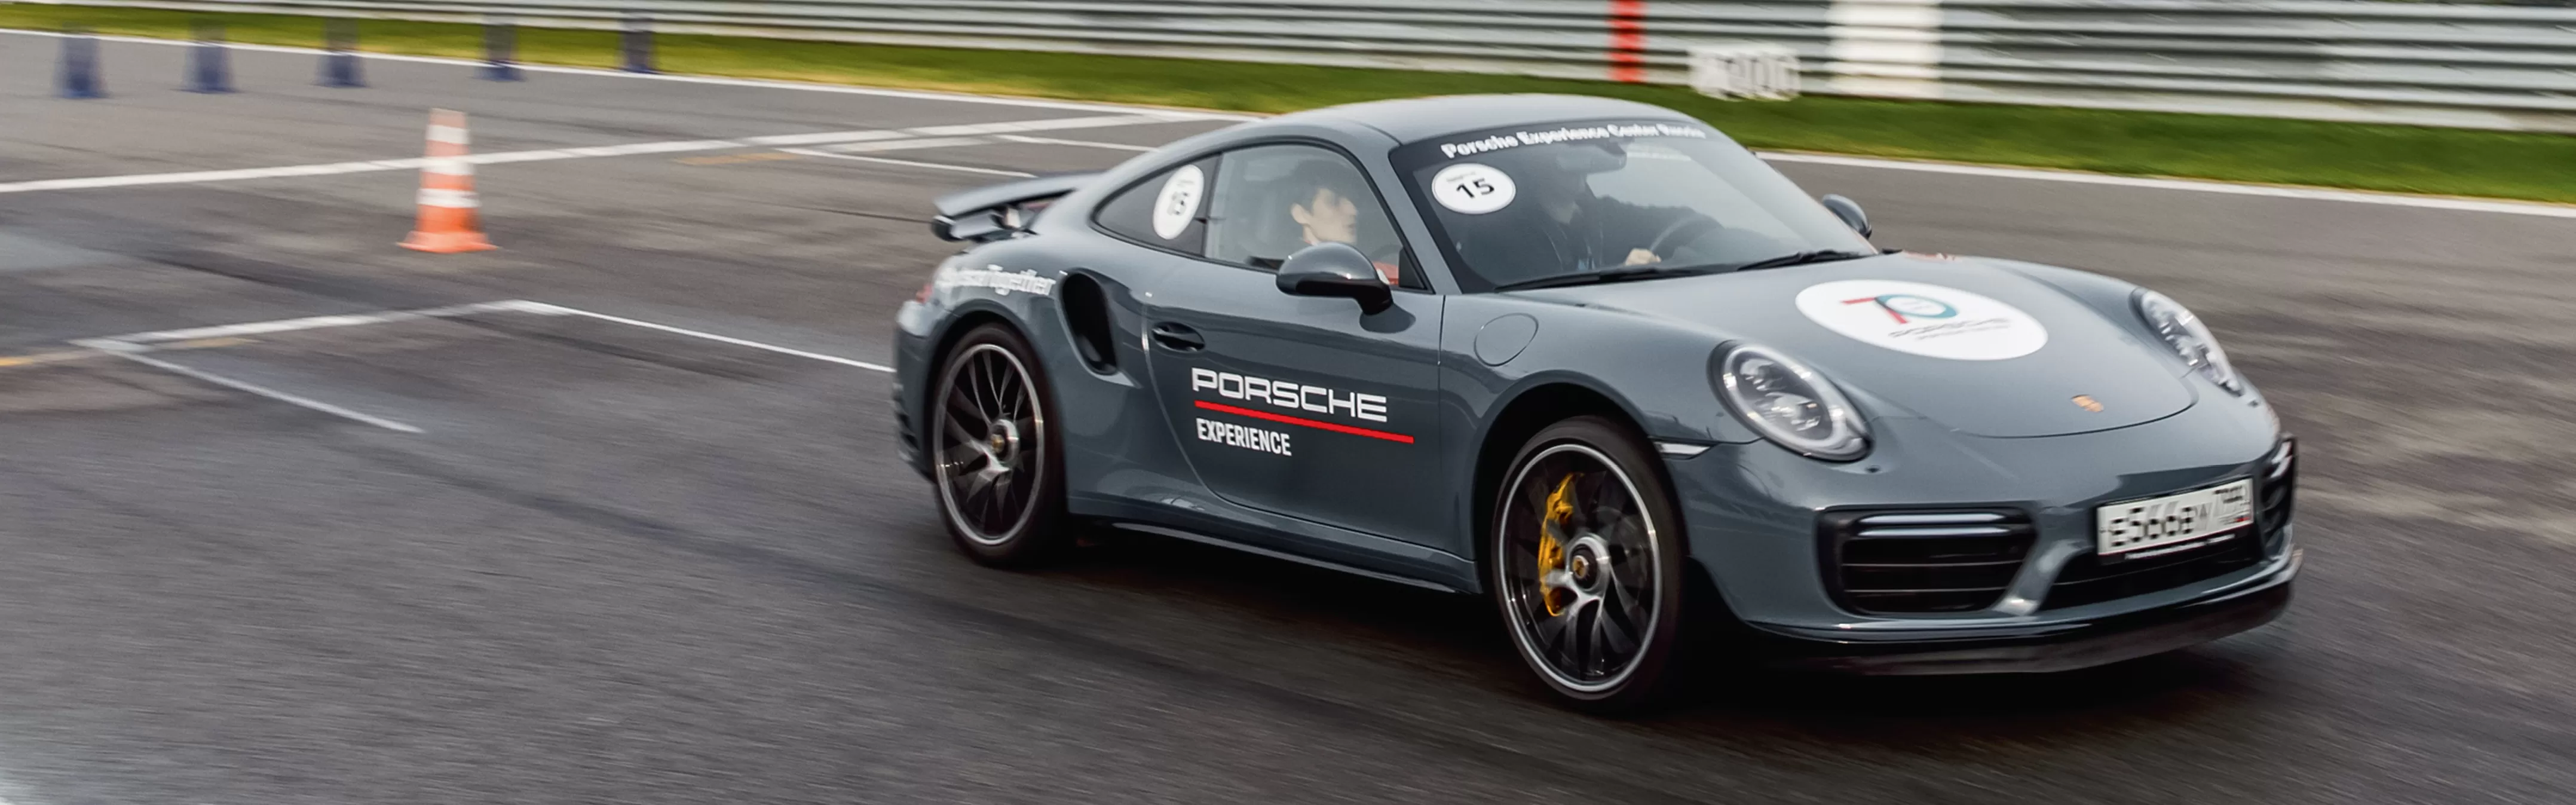 Центр вождения Porsche